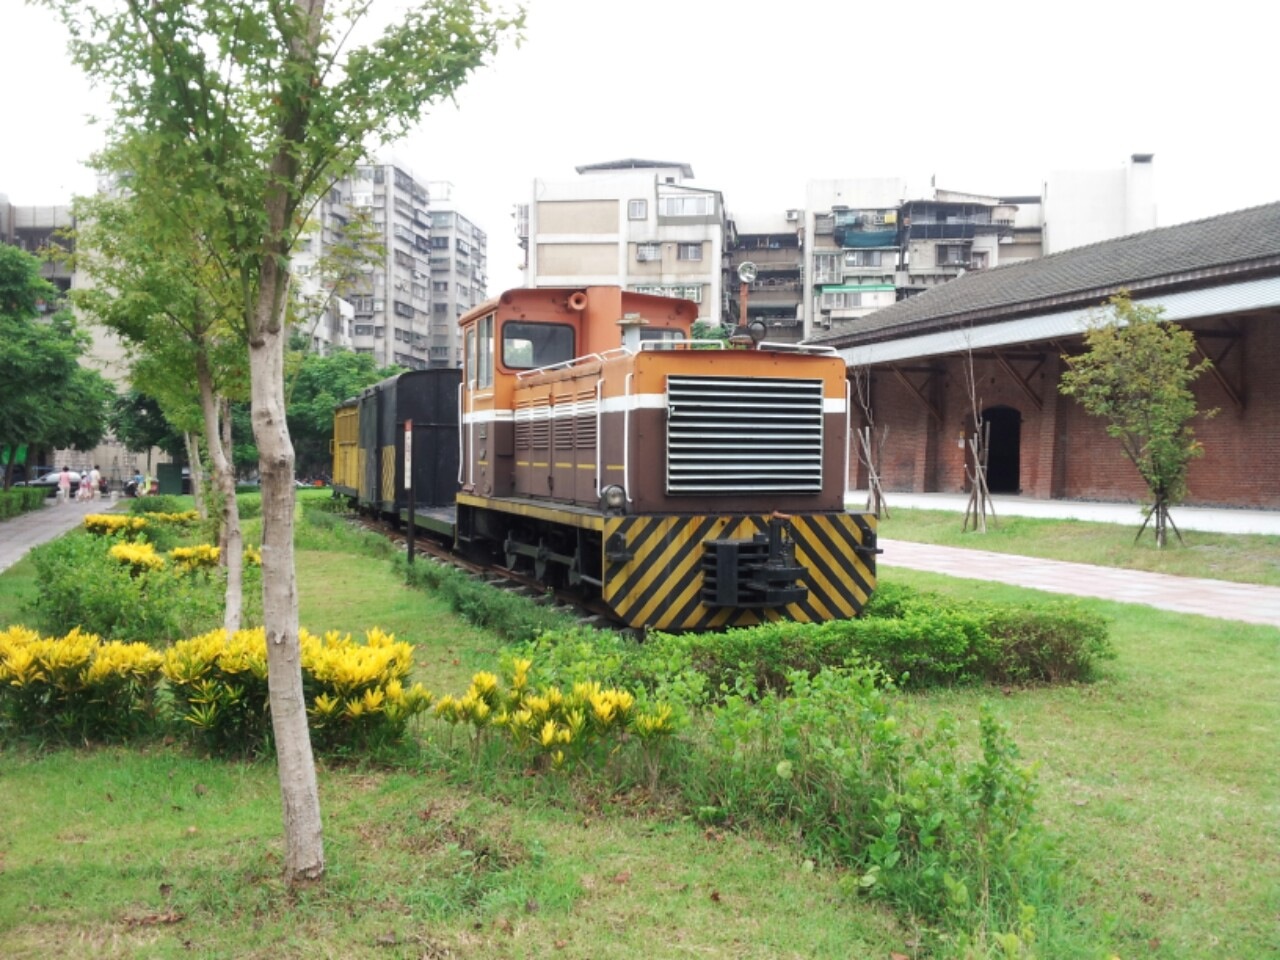 展示於臺北市大理街甘蔗公園內的糖鐵列車。機車：溪湖日立843，平車、篷車、守車均來自佳里糖廠。